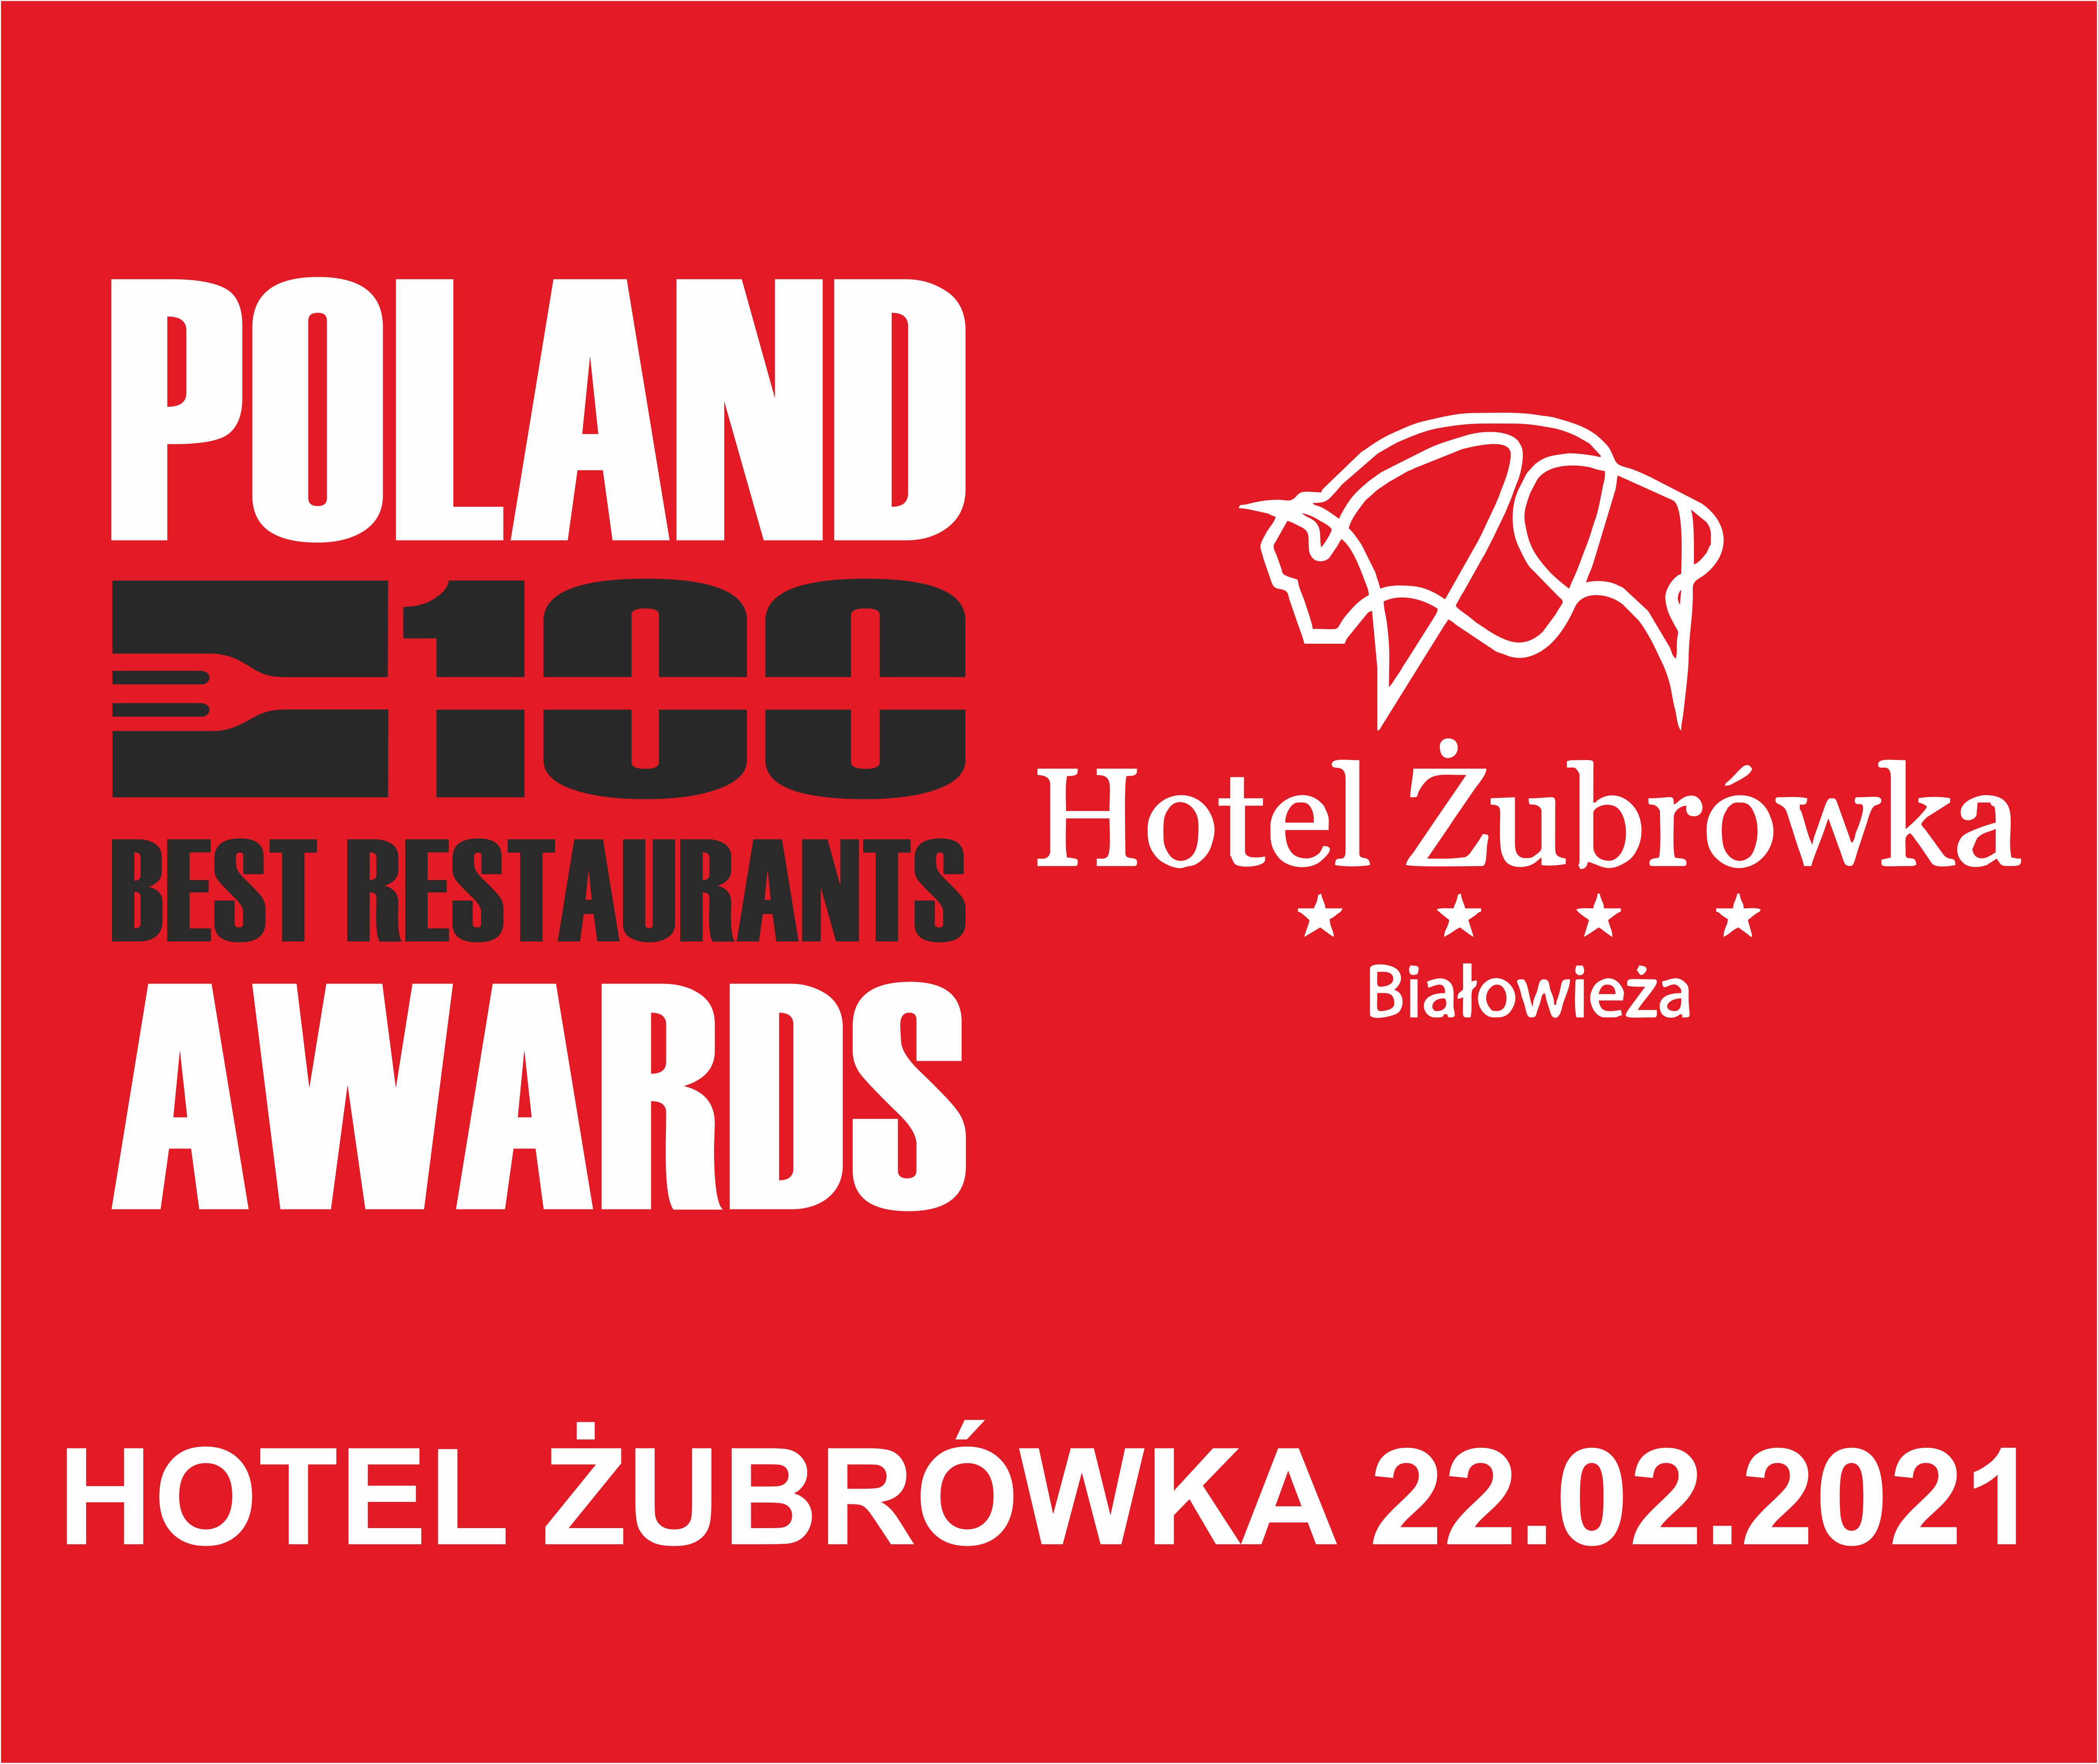 Poland 100 Best Restaurants Awards 2020 – zmiana terminu